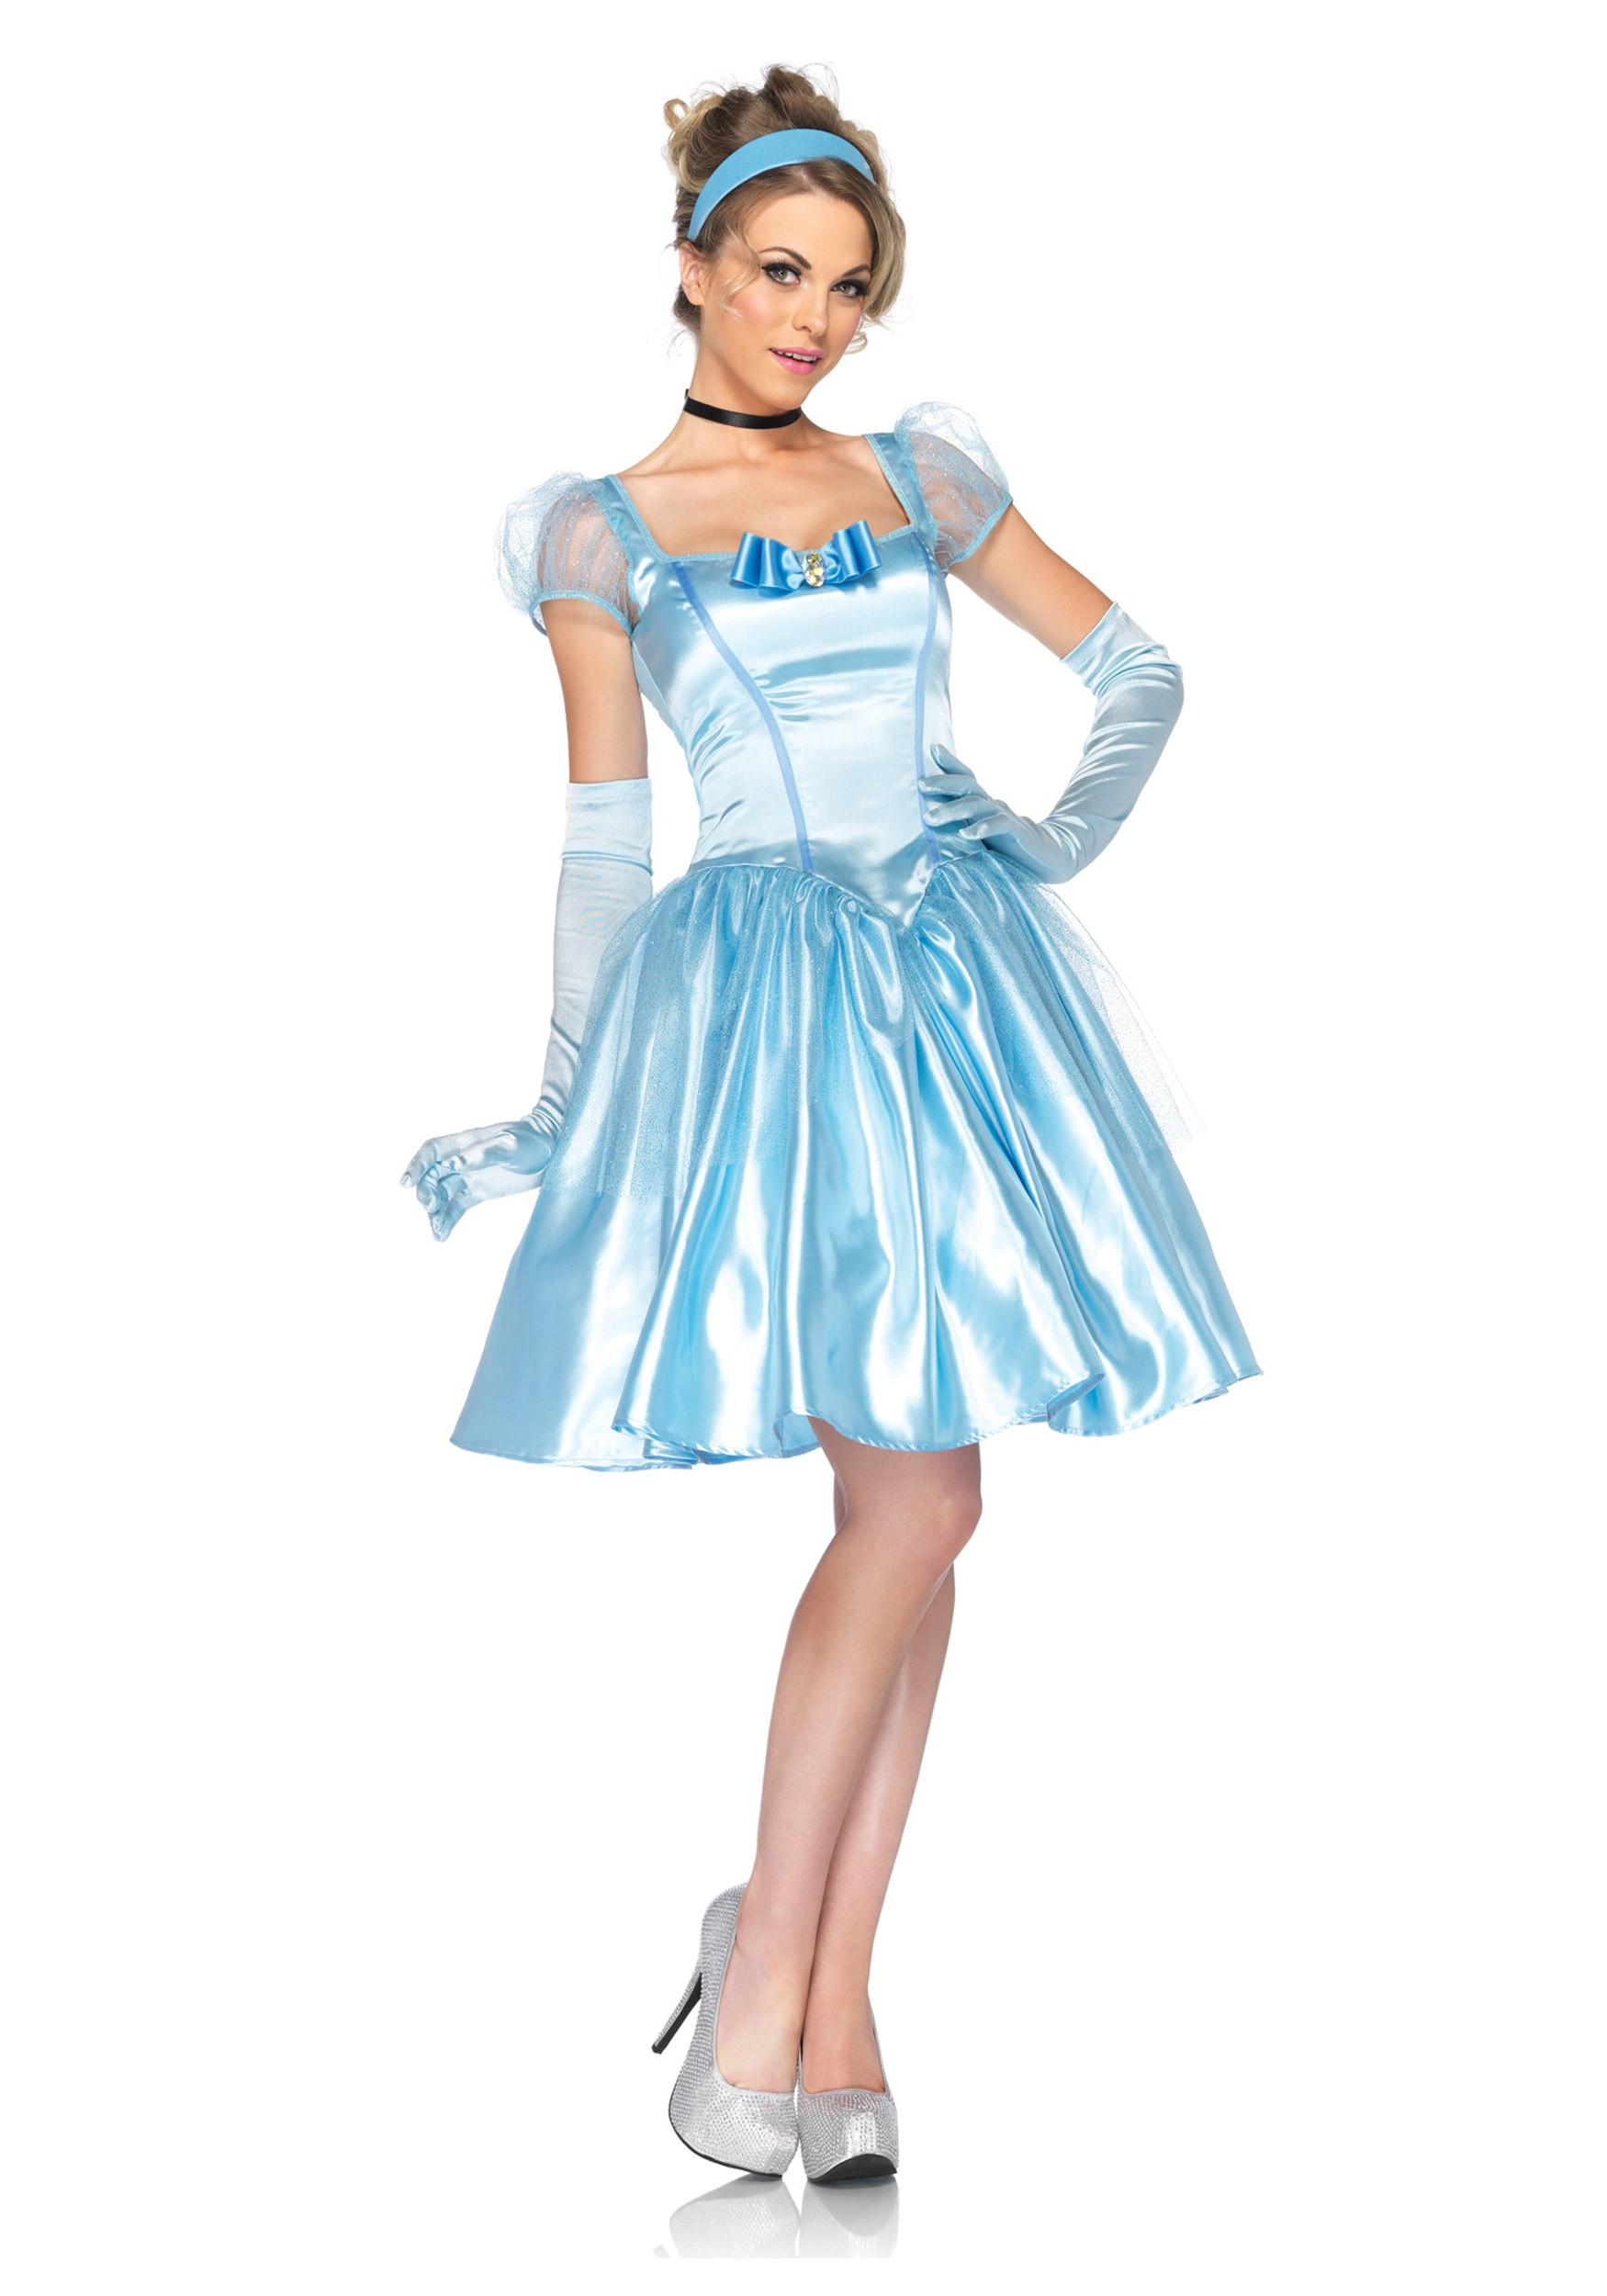 Cinderella DIY Costumes
 Plus Size Disney Classic Cinderella Costume